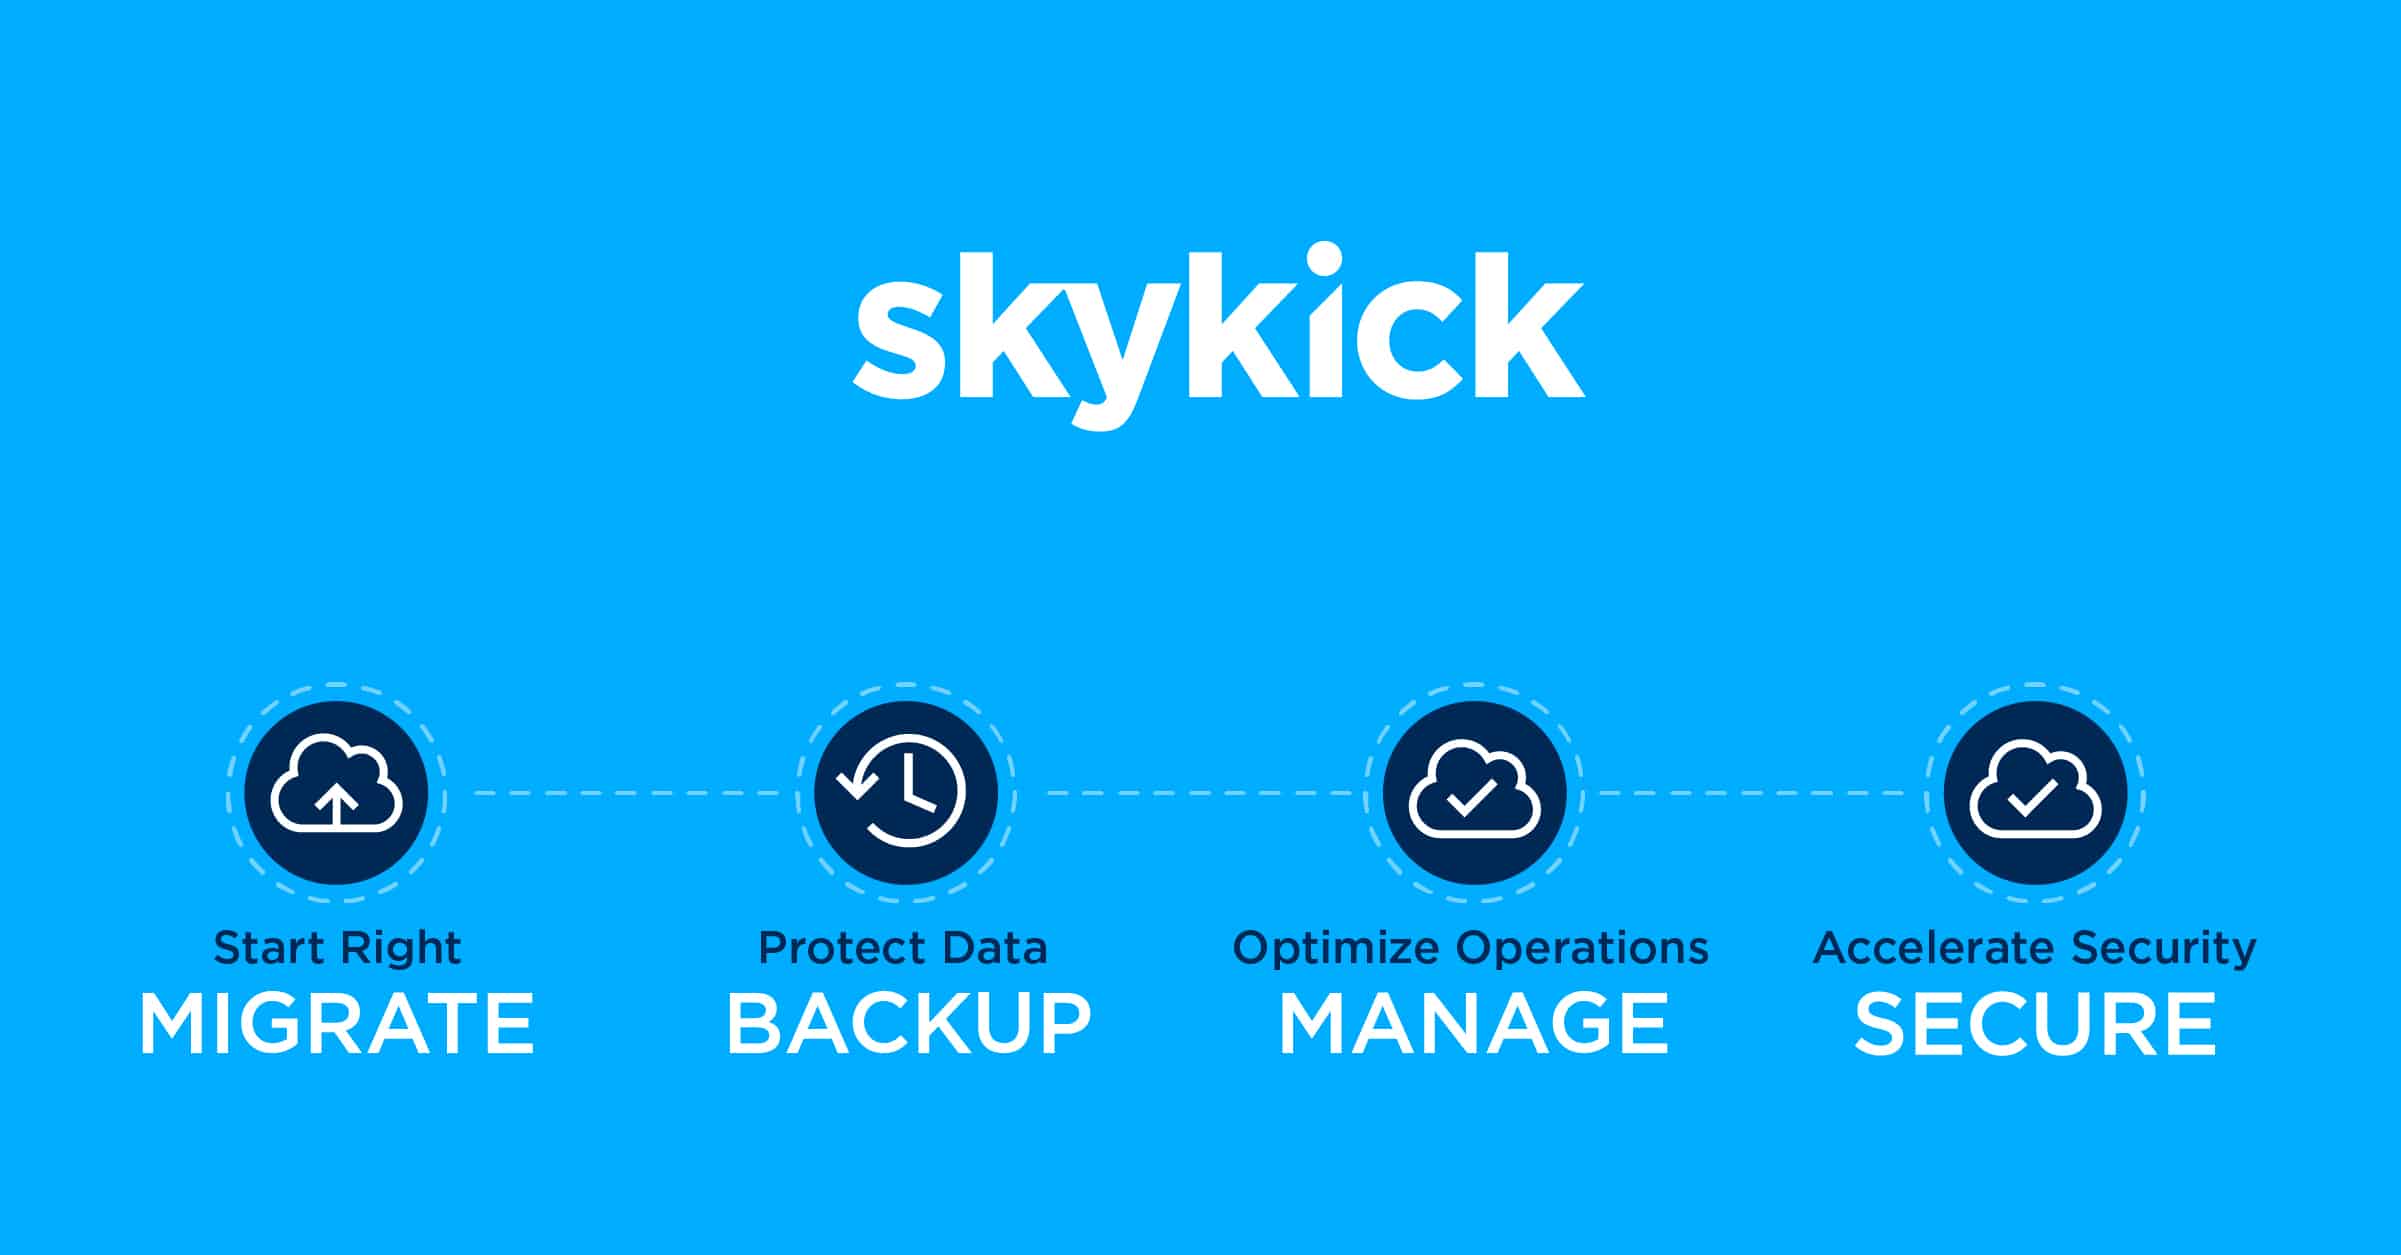 www.skykick.com